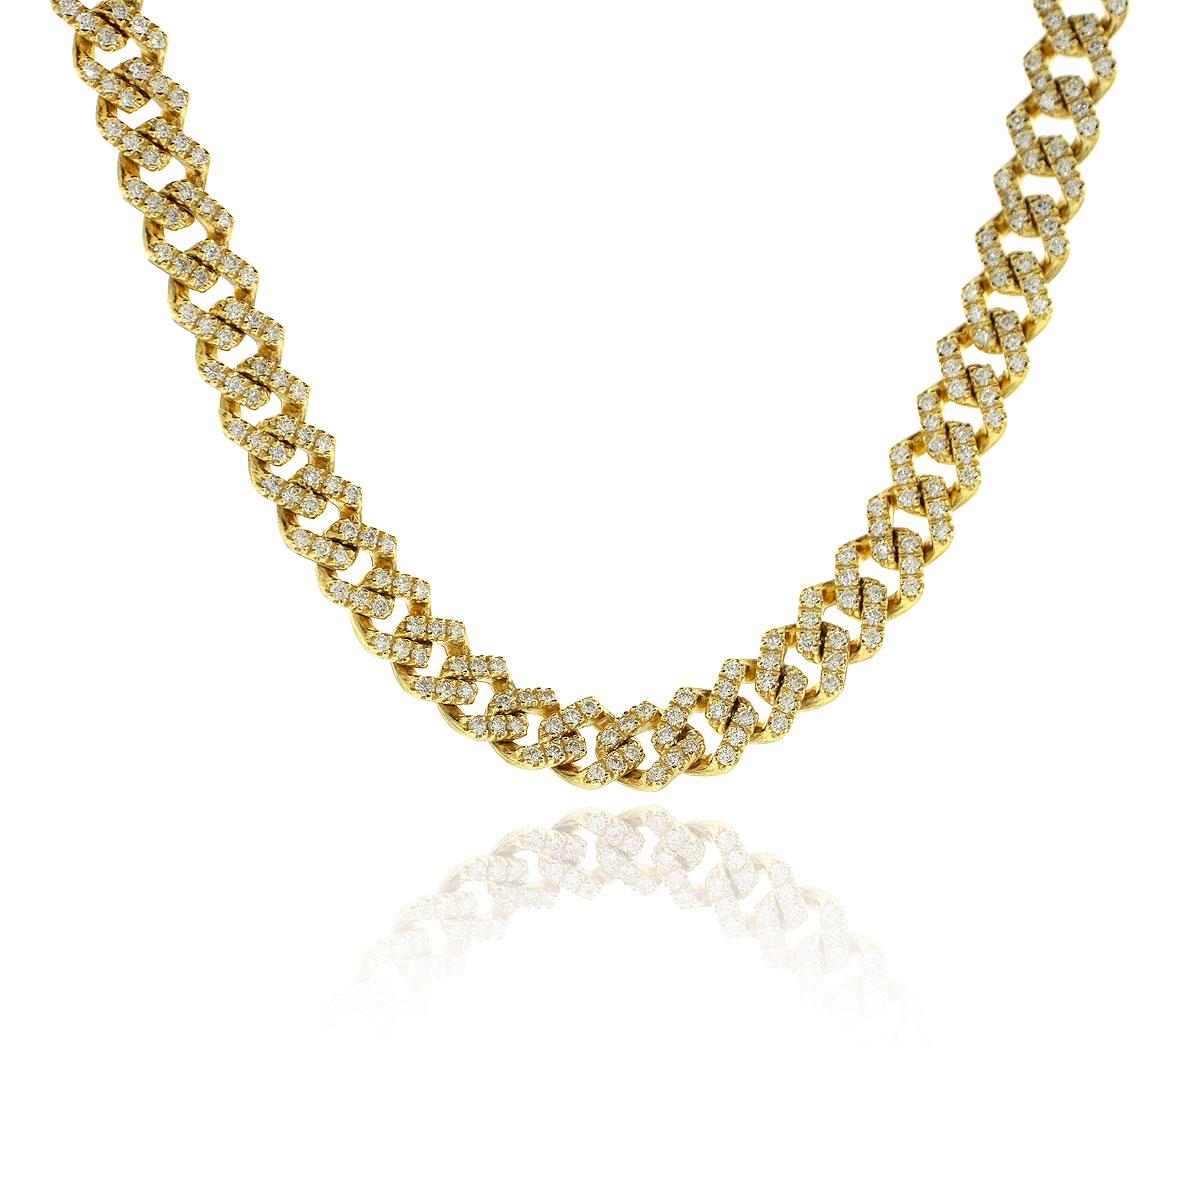 Stil: 14k Gelbgold 13,74ctw Diamant Pave Cuban Link Kette Halskette
MATERIAL: 14k Gelbgold
Stein-Details: Ca. 13.74 ct. rund geschliffene Diamanten. Die Diamanten haben eine Farbe von G/H und eine Reinheit von VS.
Gewicht: 78,5g